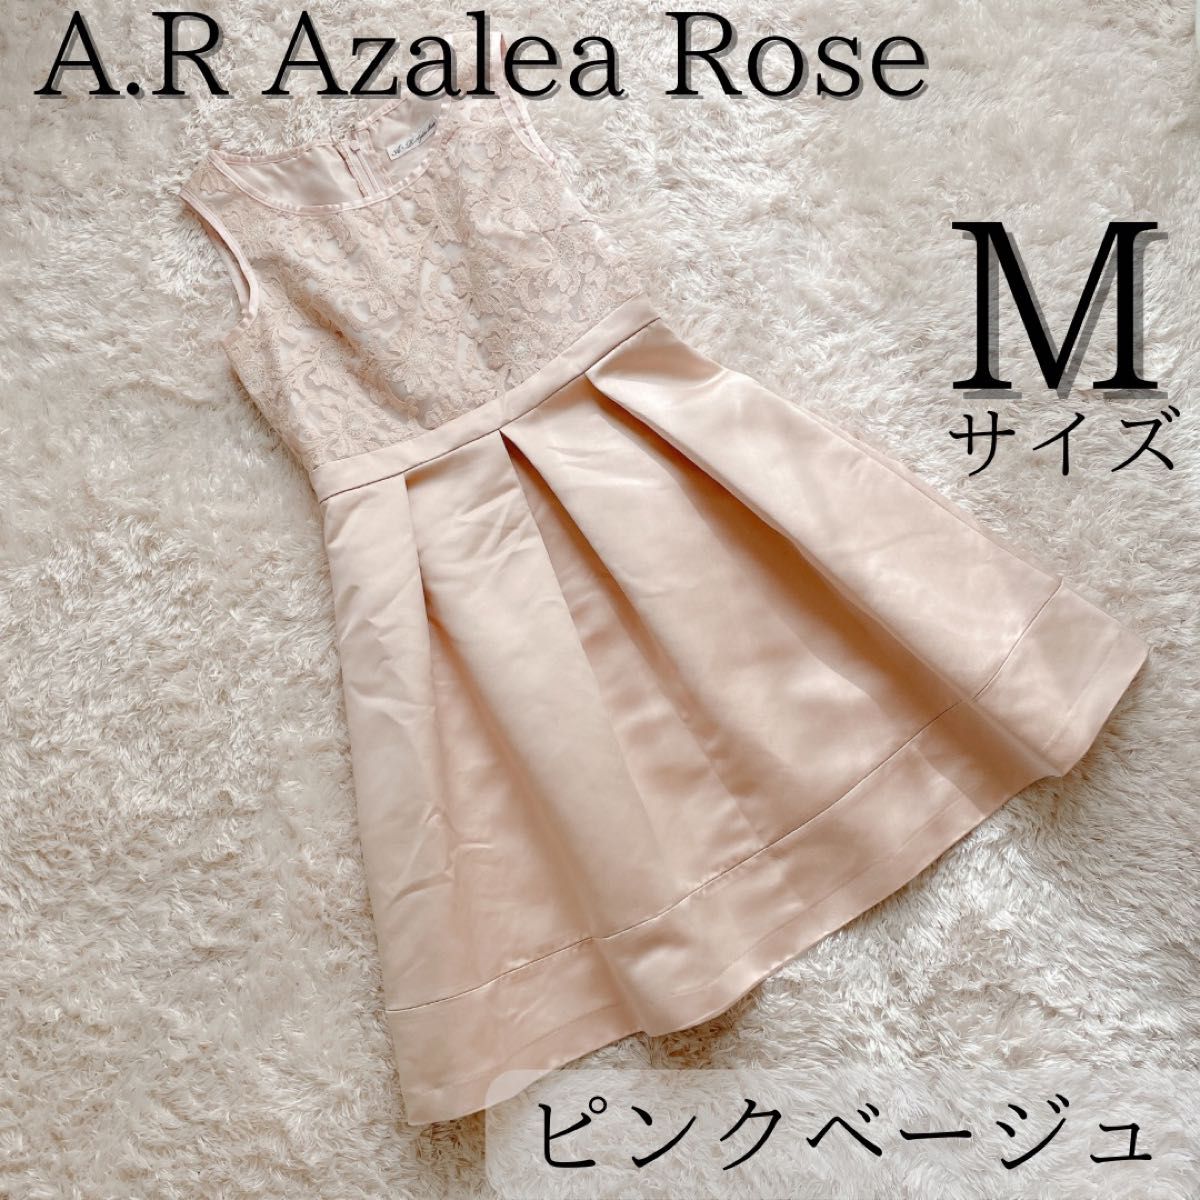 美品 A.R Azalea Rose レース刺繍 パーティードレス ピンク系 M ノースリーブ ワンピース サテン